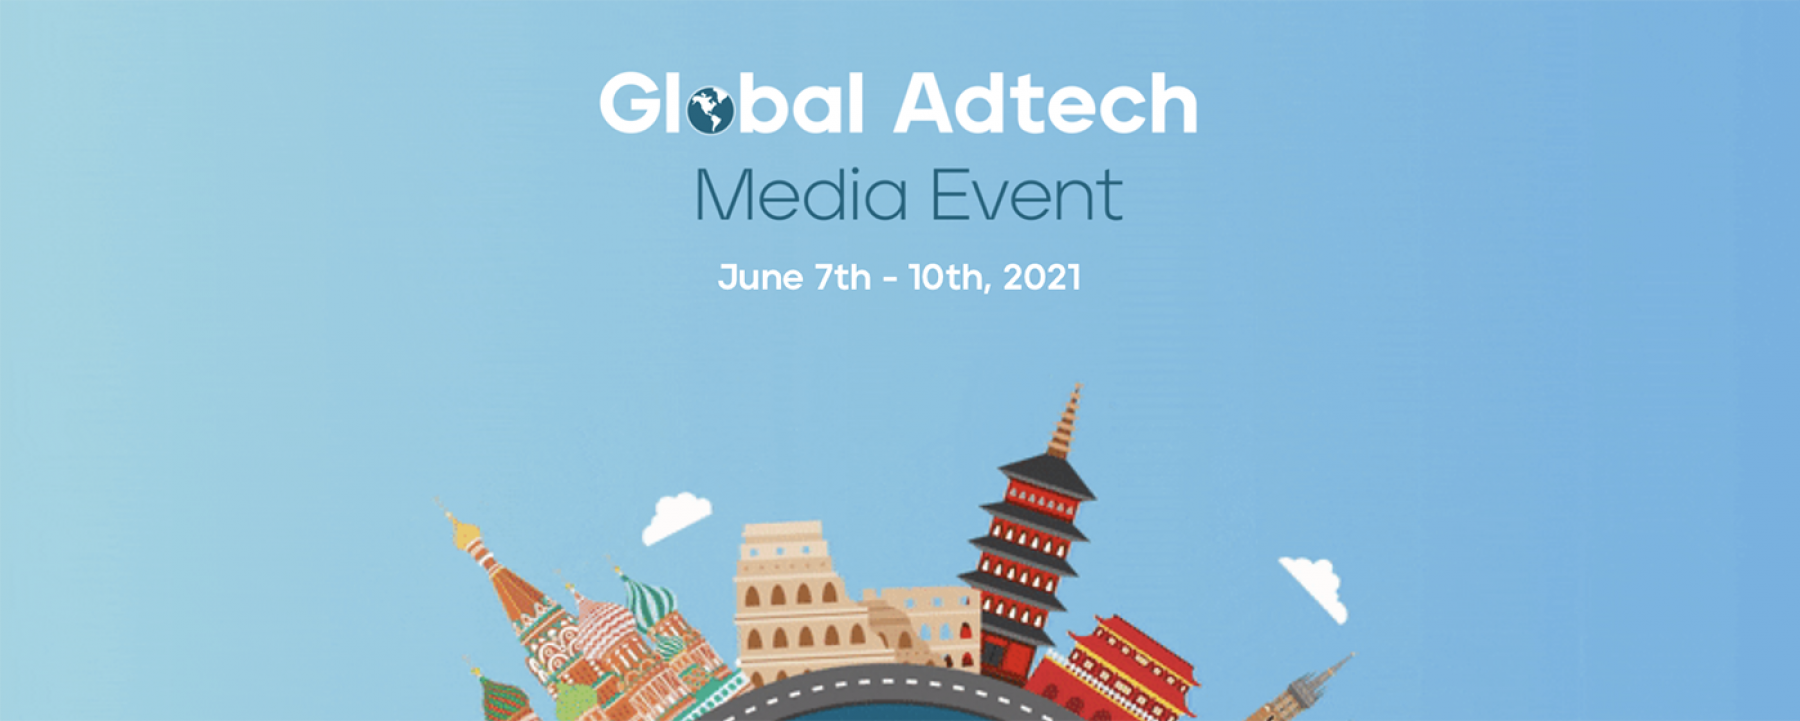 Global Adtech Media Event, du 7 au 10 juin 2021